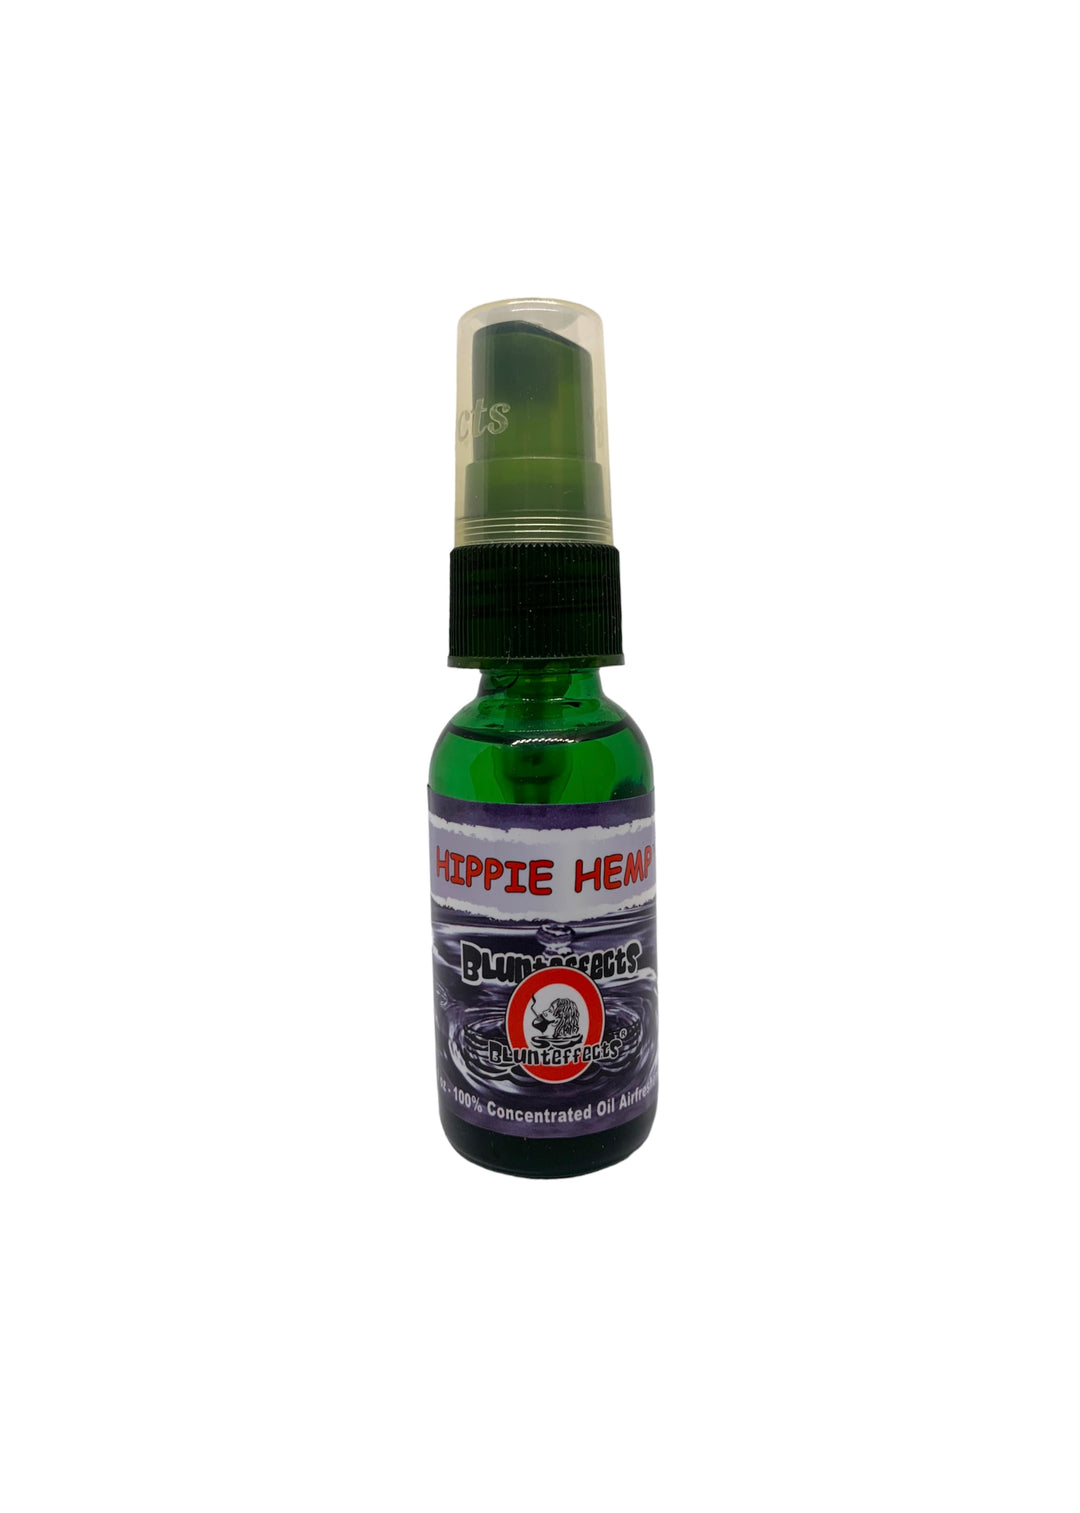 Blunteffects Hippie Hemp Spray Air-Freshener 1 OZ